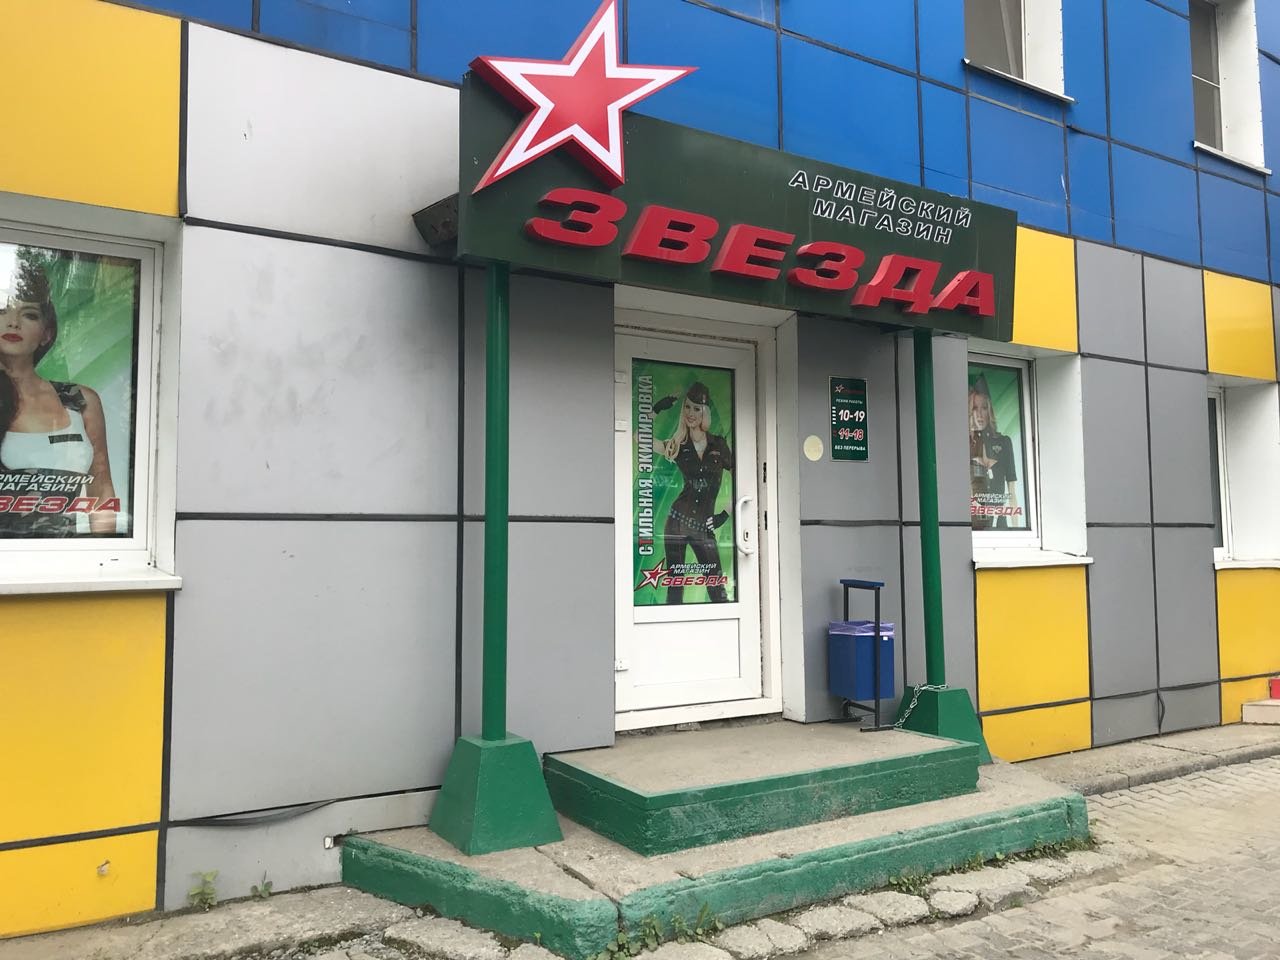 Армейский магазин сети "Звезда" в Южно-Сахалинске 